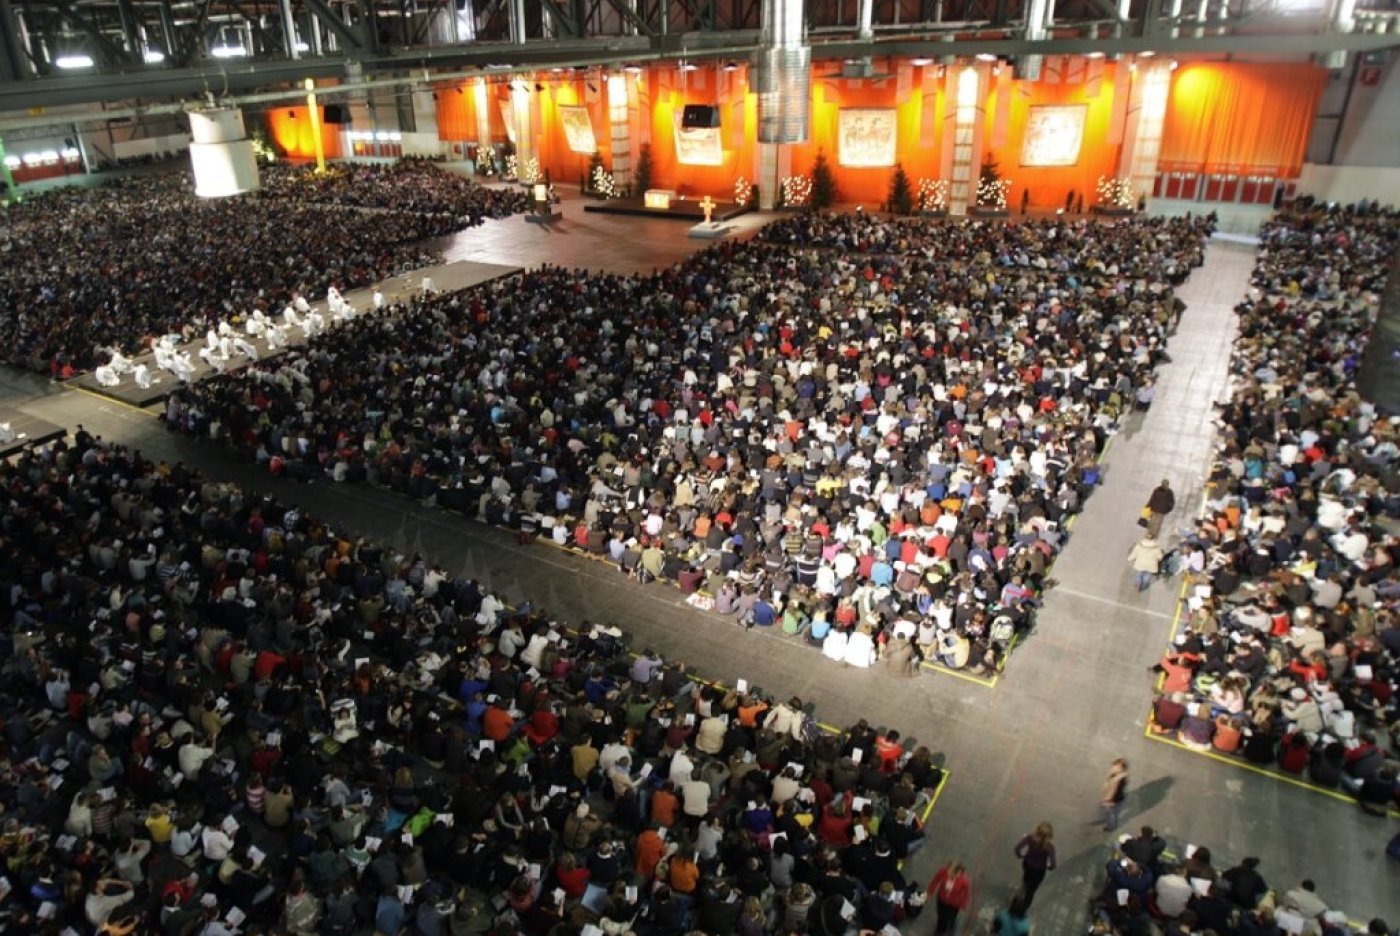 La communauté de Taizé avait accueilli plus de 40'000 jeunes à Genève à la fin 2007 (archives). KEYSTONE